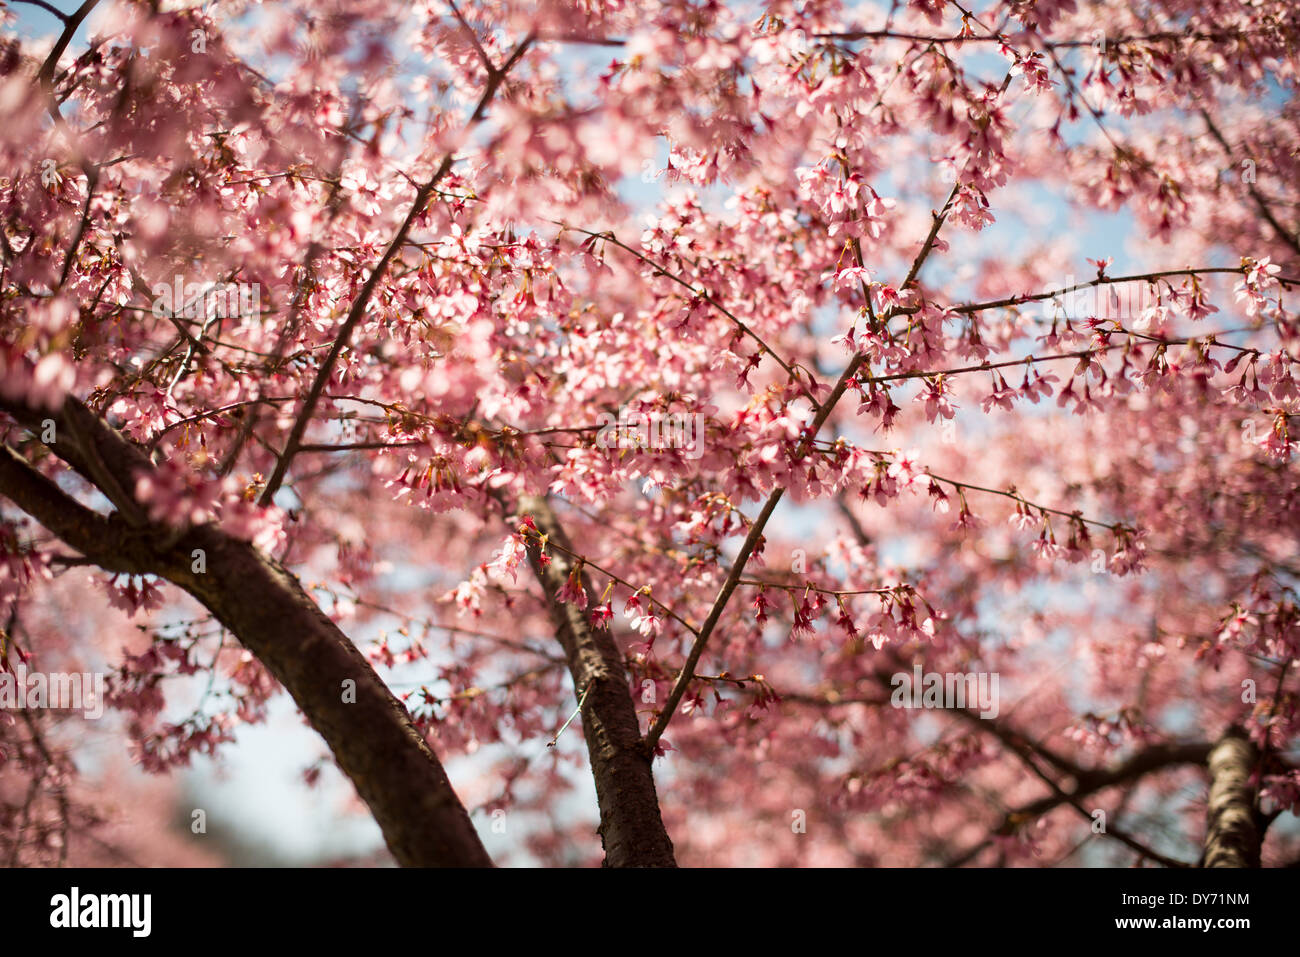 WASHINGTON DC, USA - belles fleurs de printemps d'un cerisier en fleurs se détachent sur un ciel bleu clair au printemps. Banque D'Images